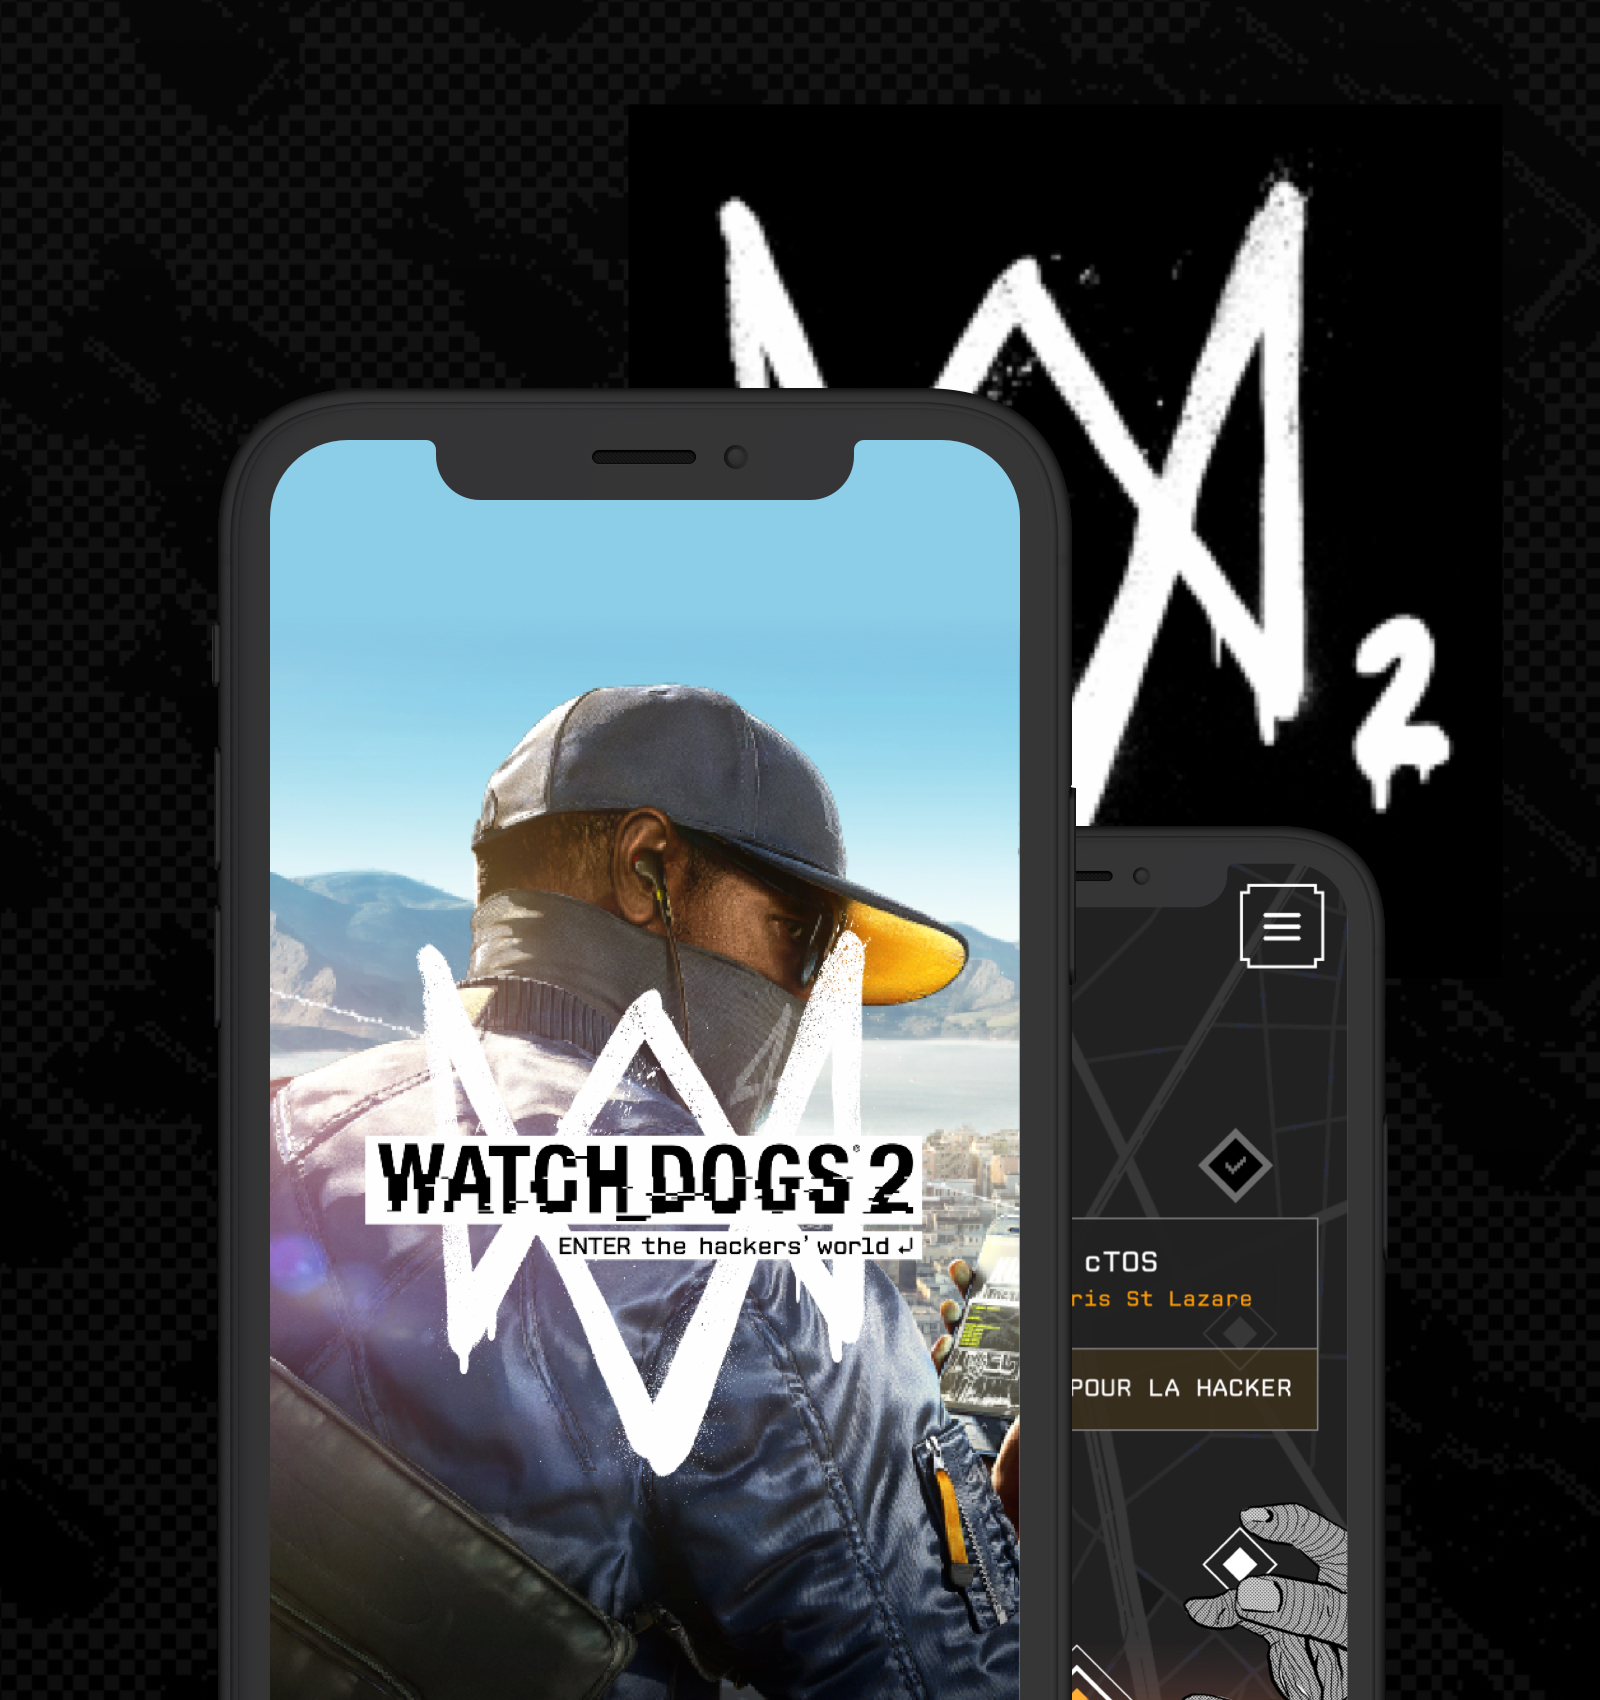 Watch dogs 2 - App